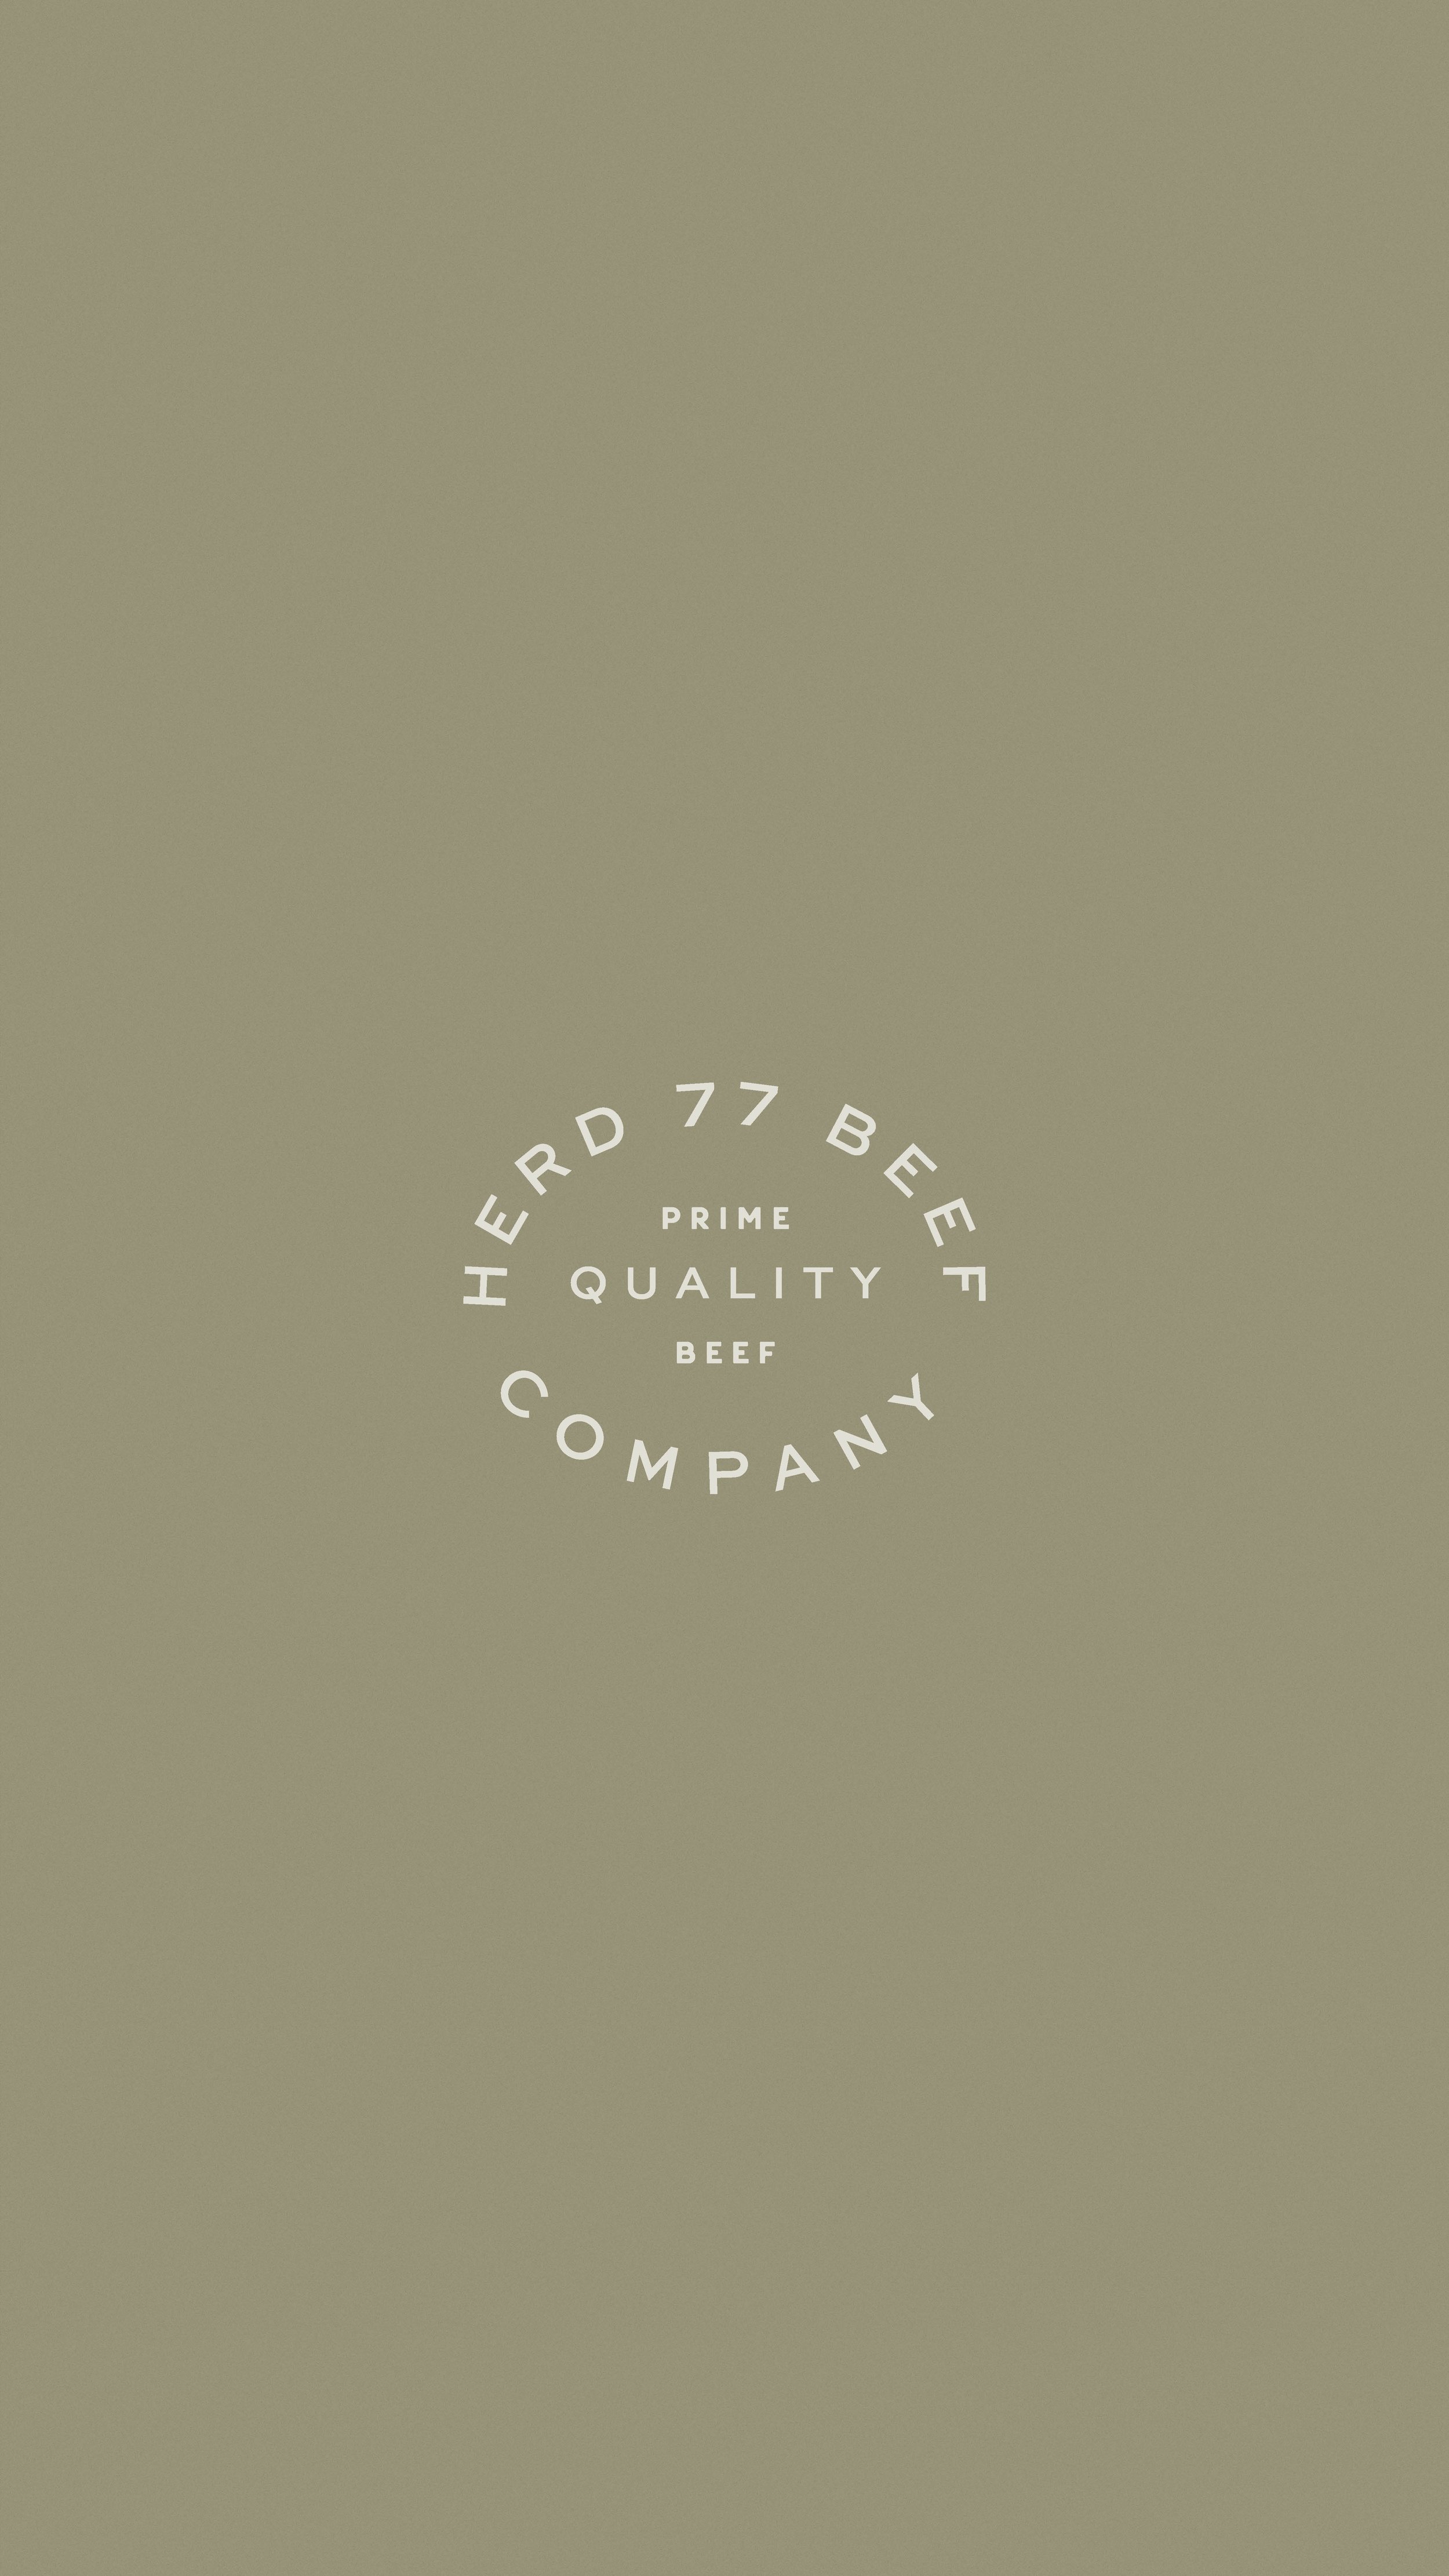 E-commerce Brand & Web Design Project, Herd 77